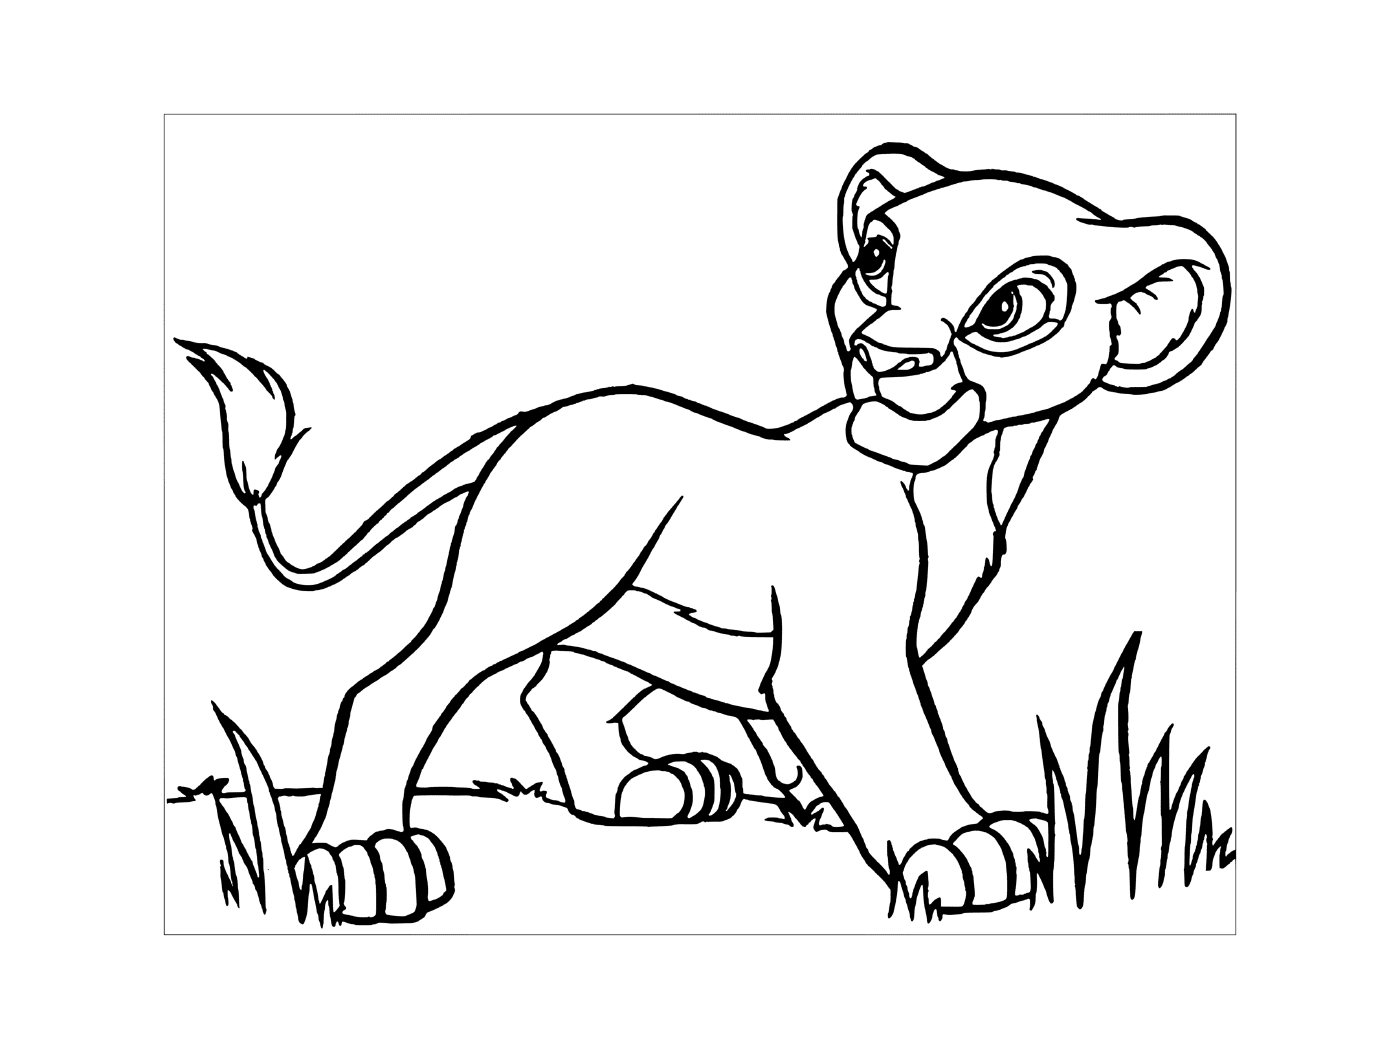  Simba in König Löwe 3 